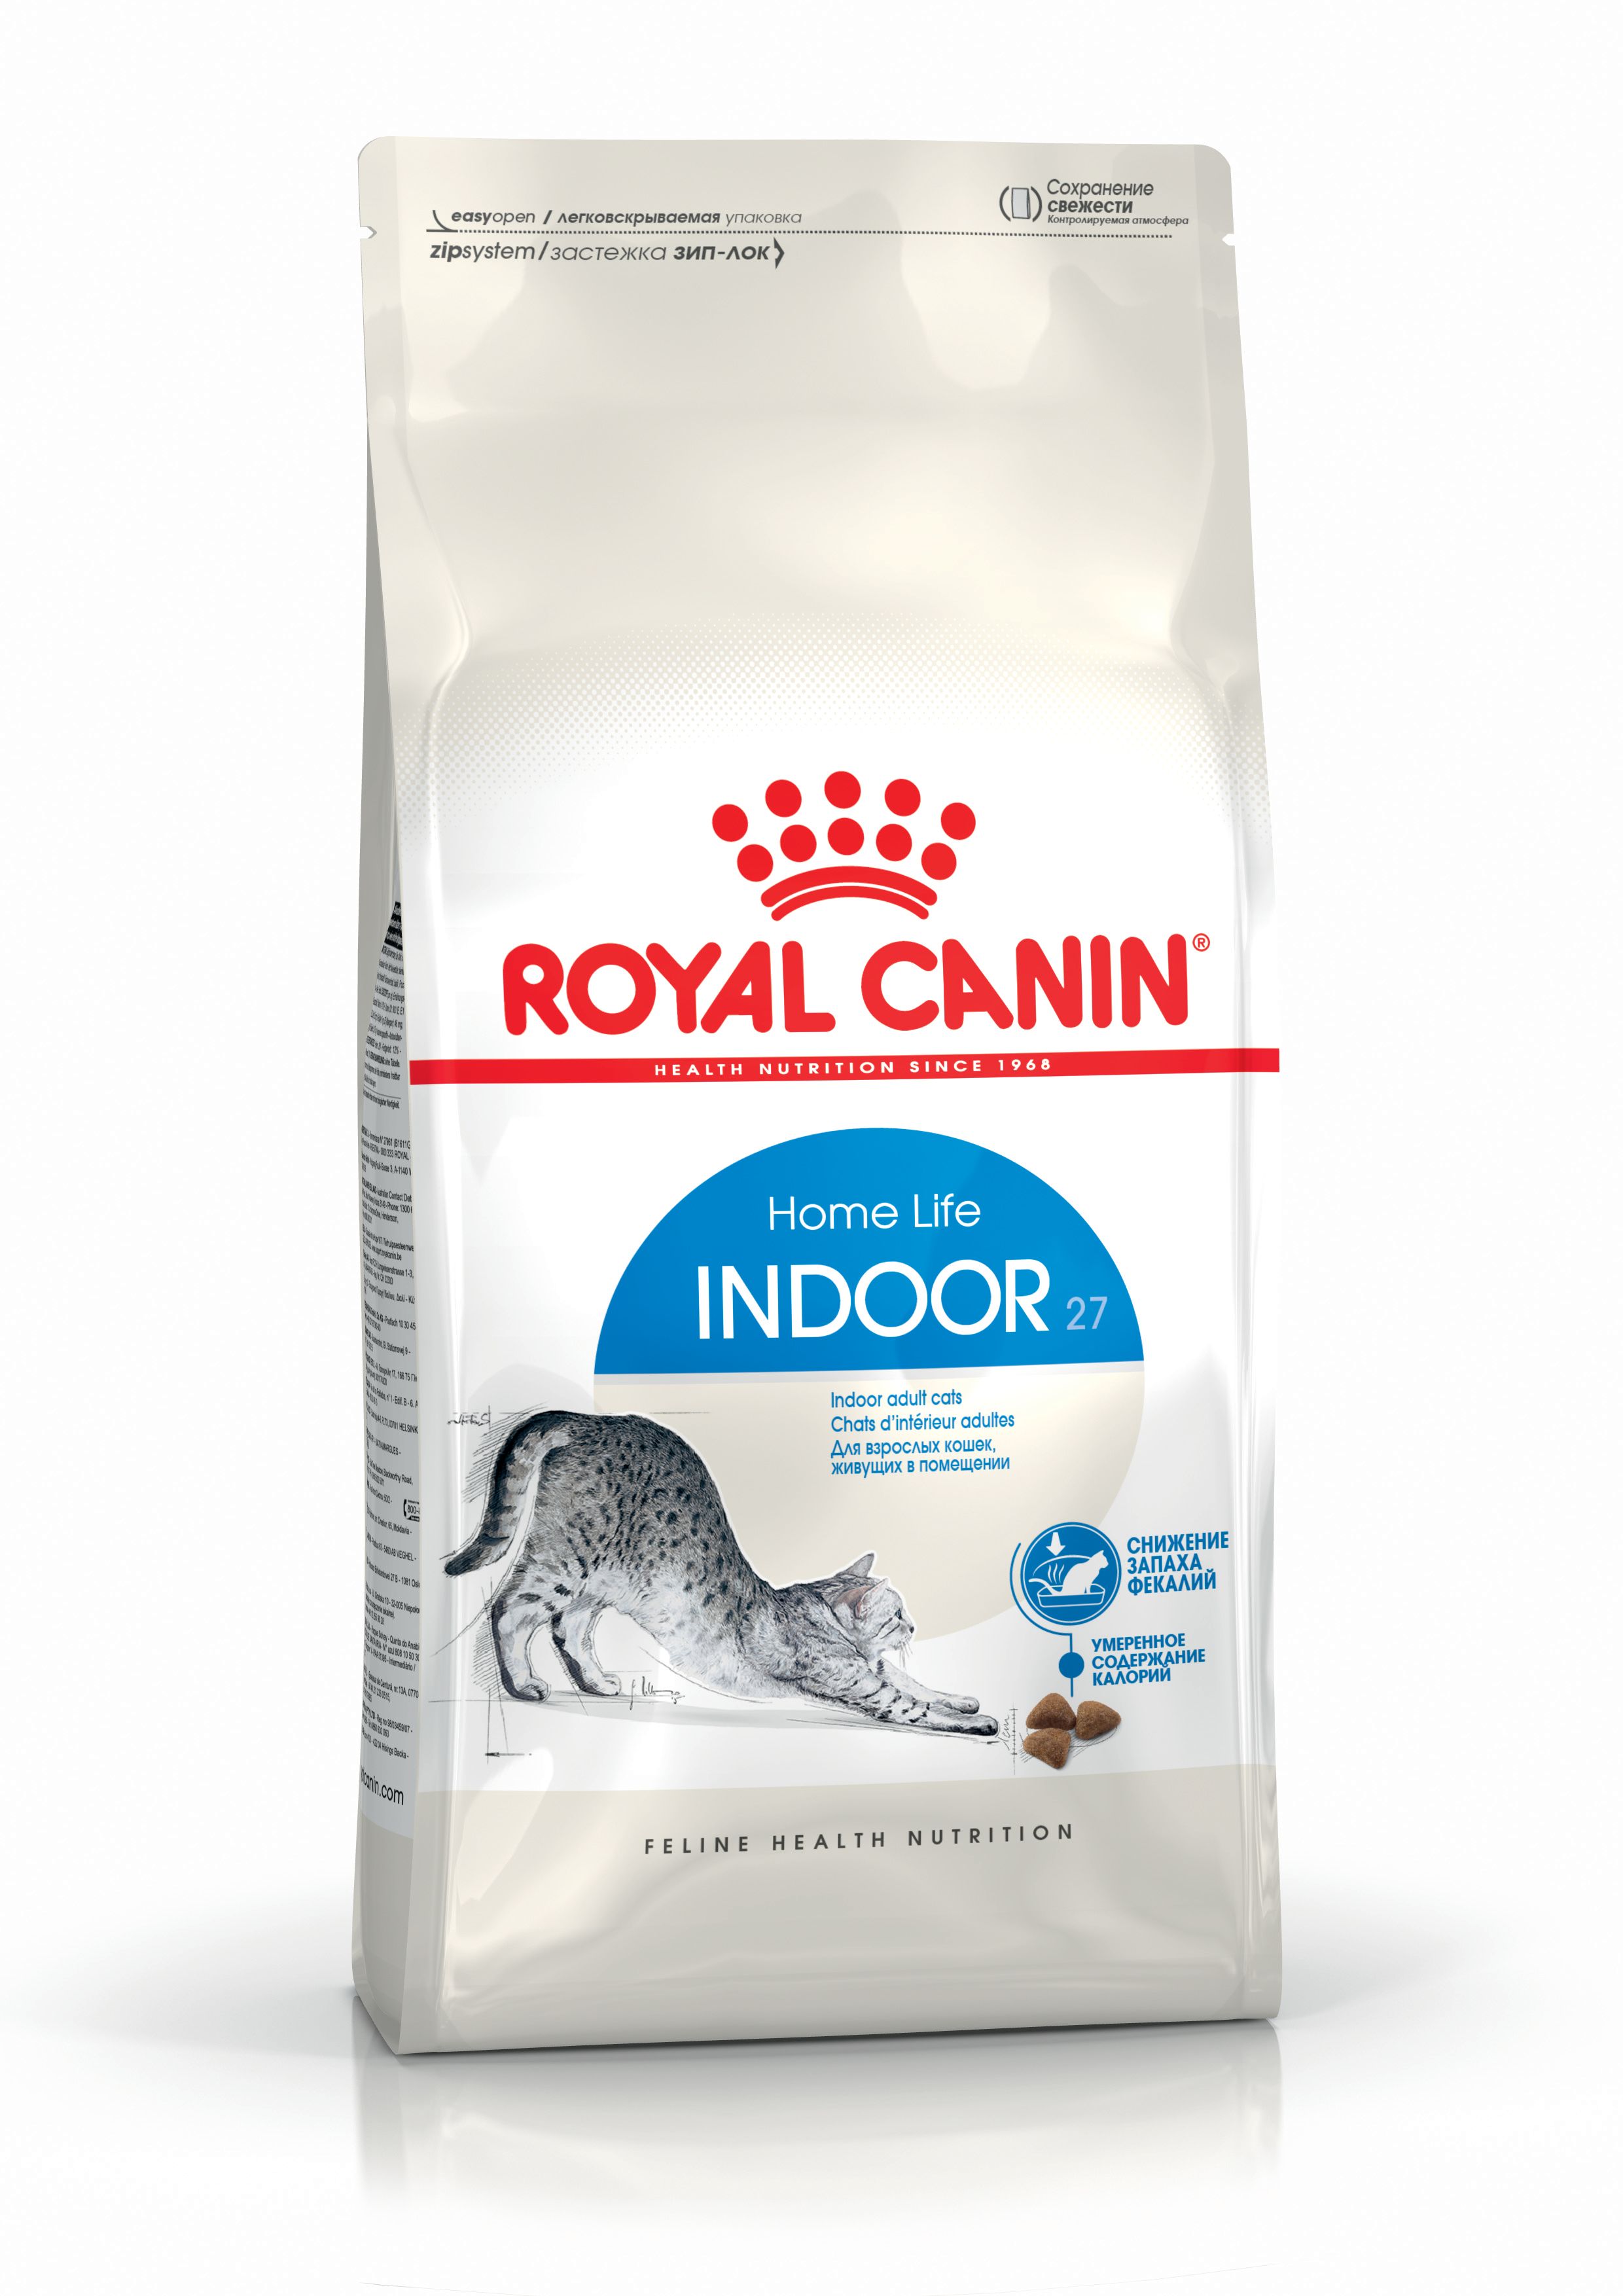 Royal Canin Indoor 27 Evde Yaşayan Yetişkin Kedi Maması 2 KG